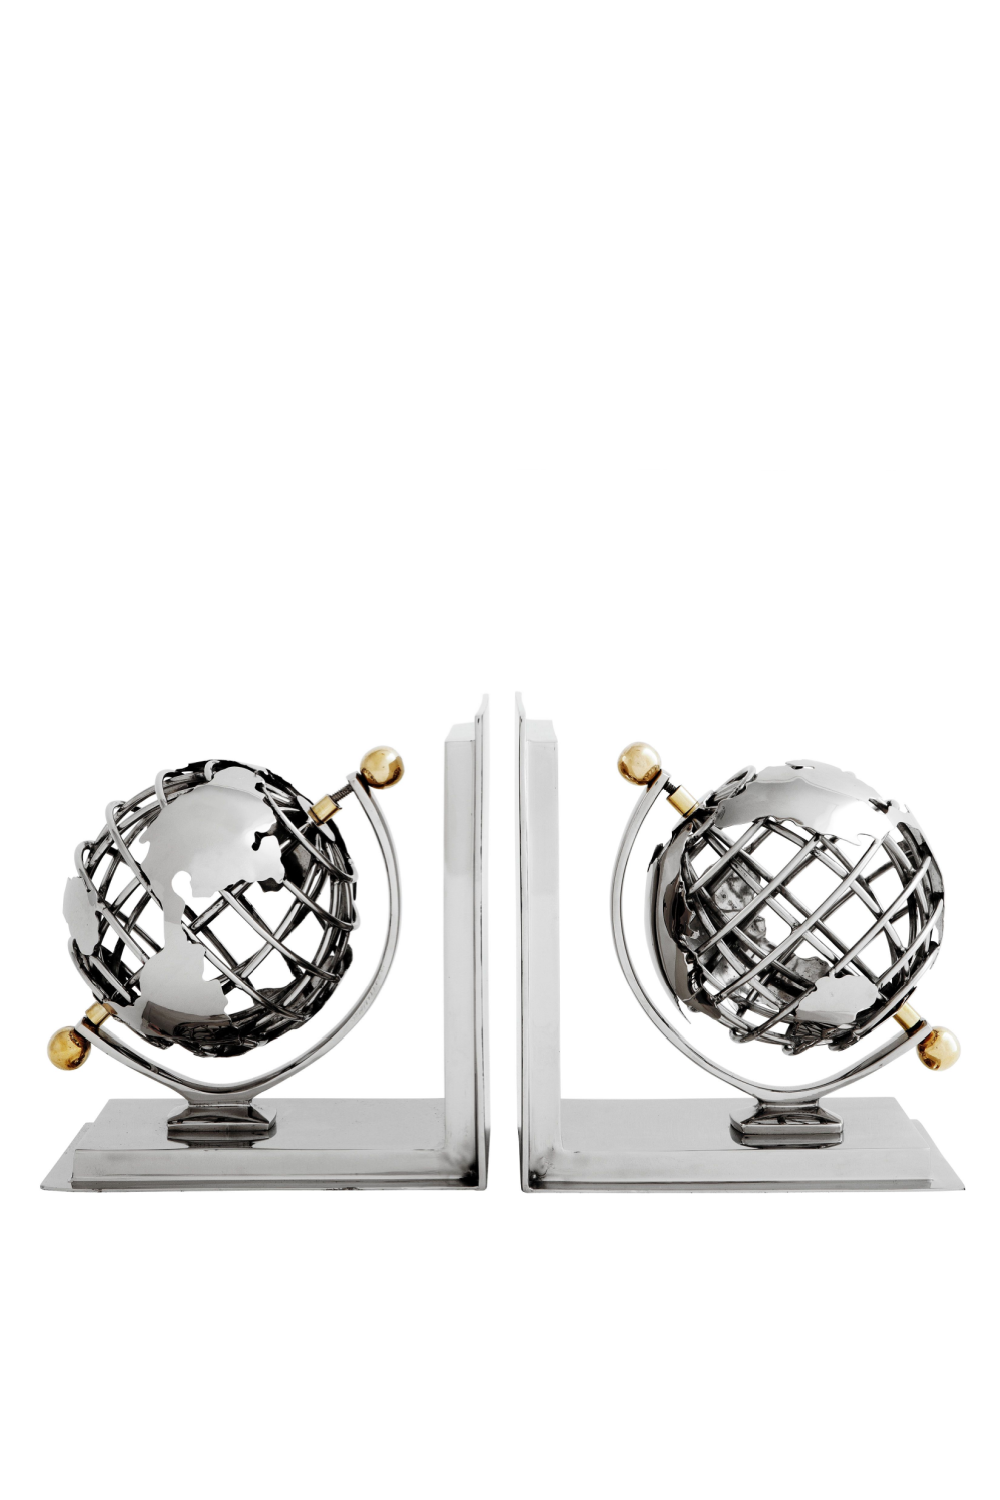 Globe Bookends set of 2 | Eichholtz | OROA